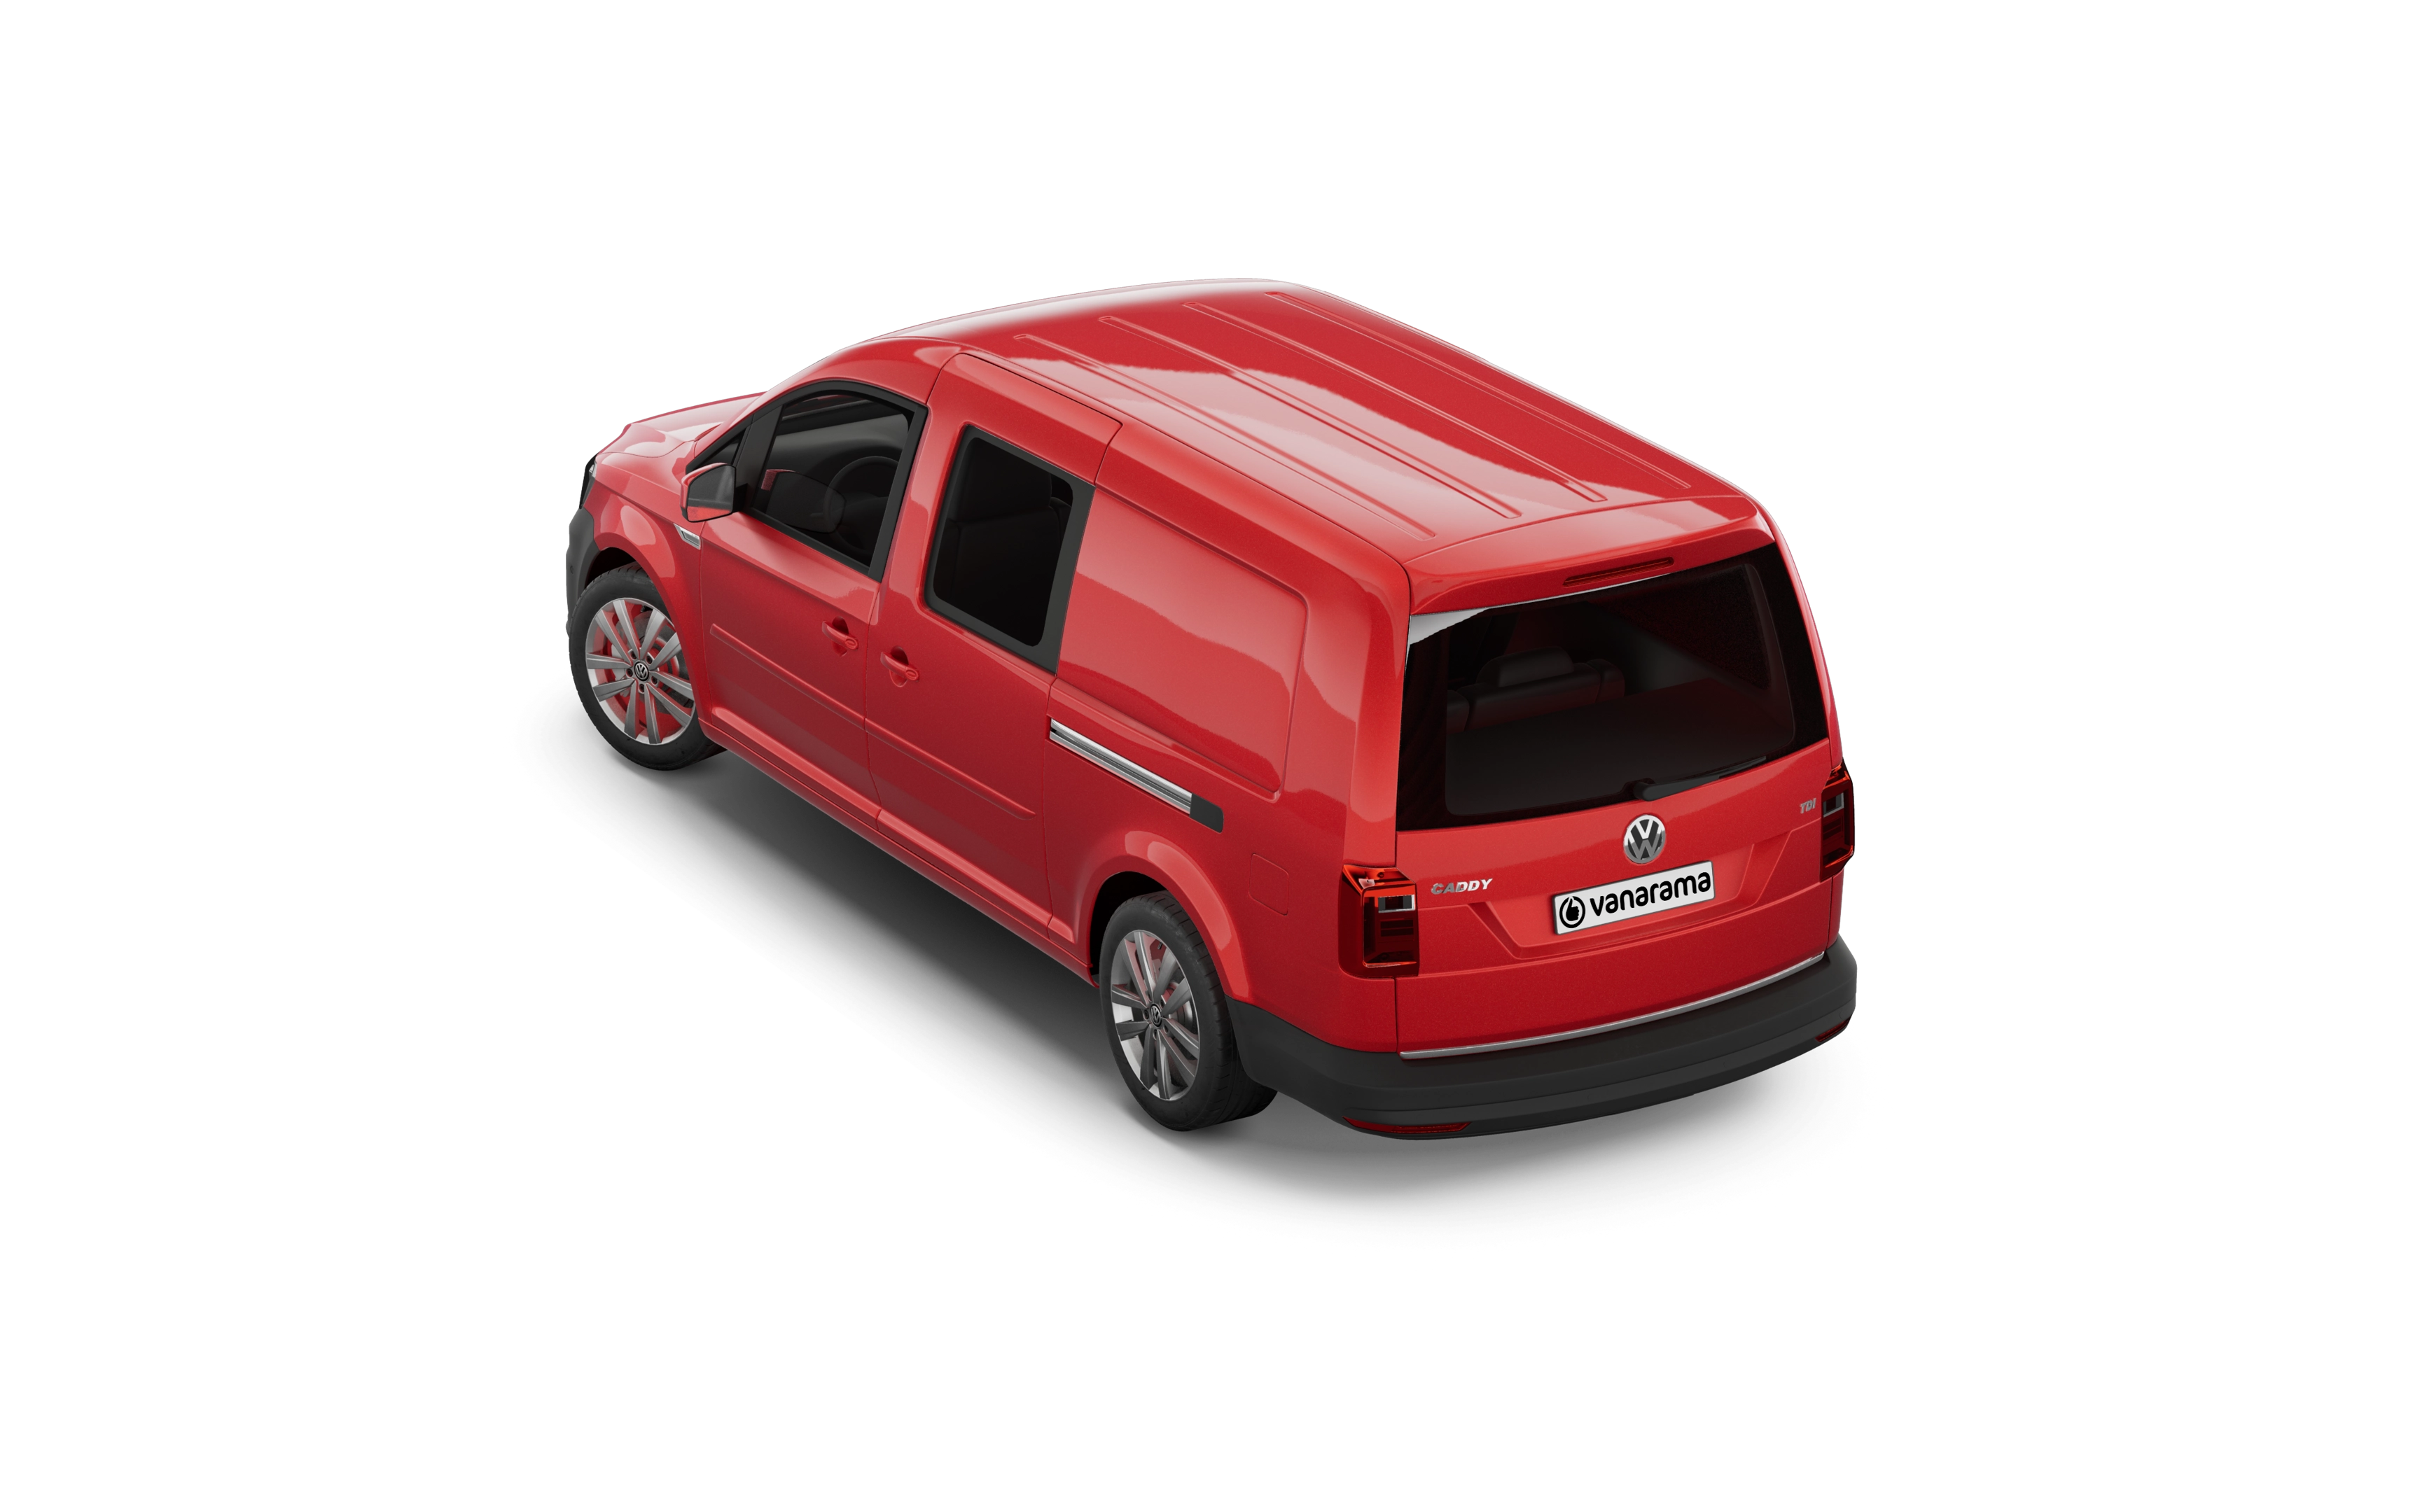 Volkswagen caddy maxi estate 2.0 tdi life 5 doors [tech pack]